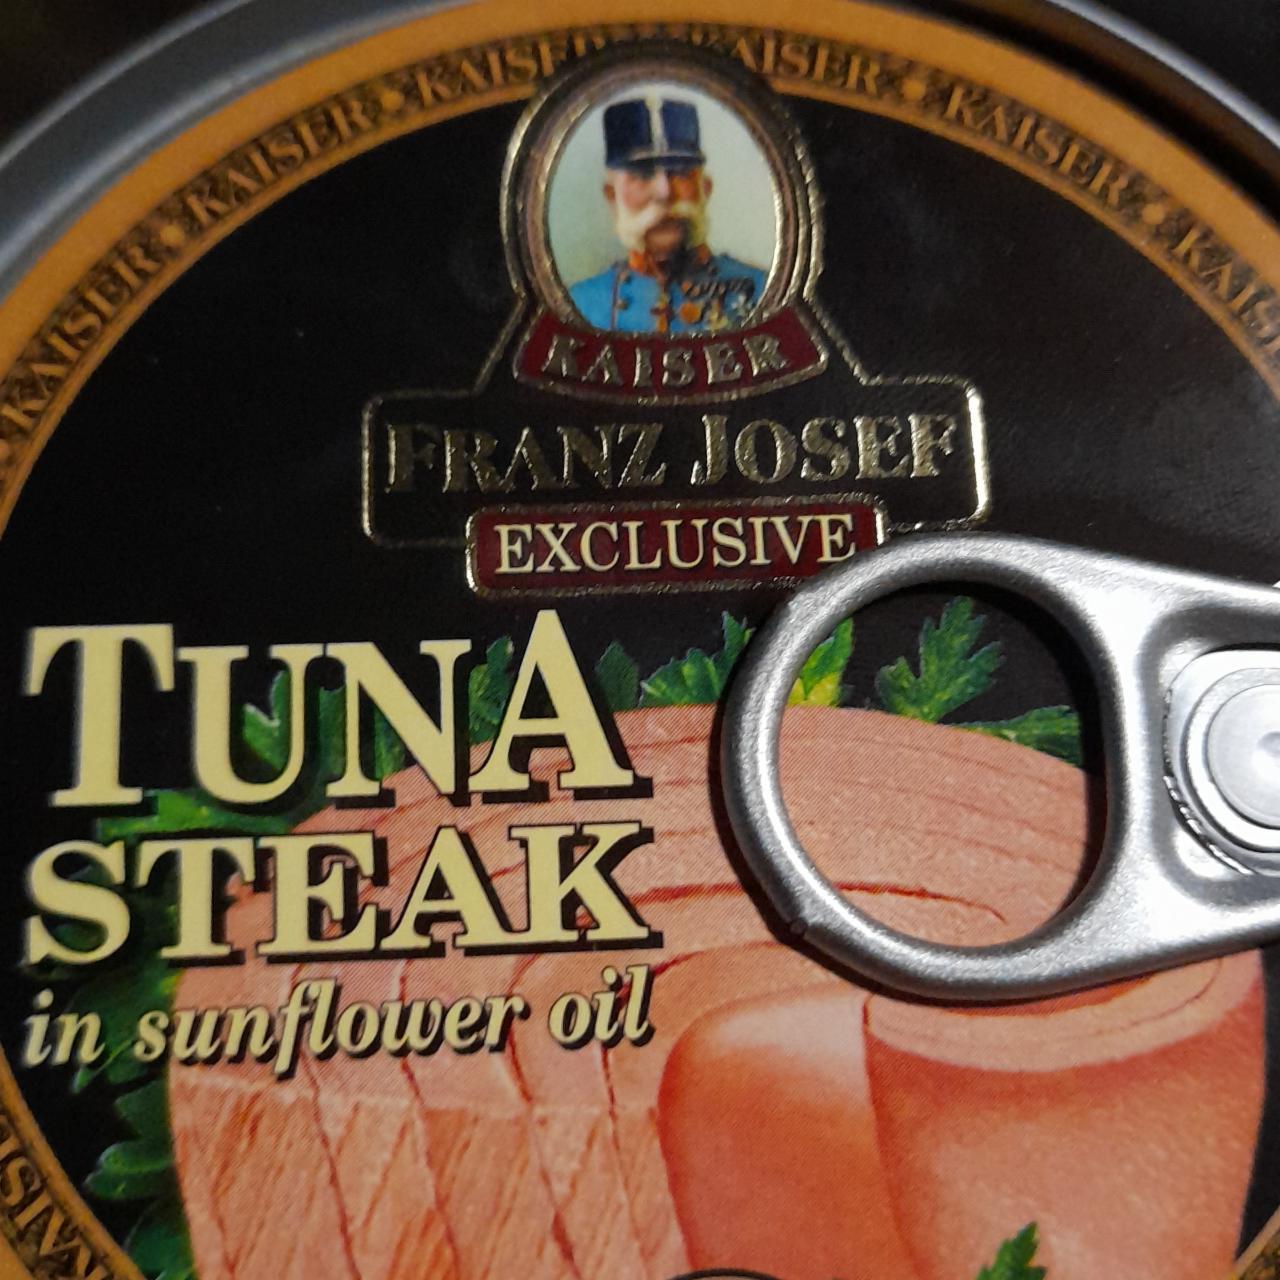 Fotografie - Tuna Steak in sunflower oil Kaiser Franz Josef